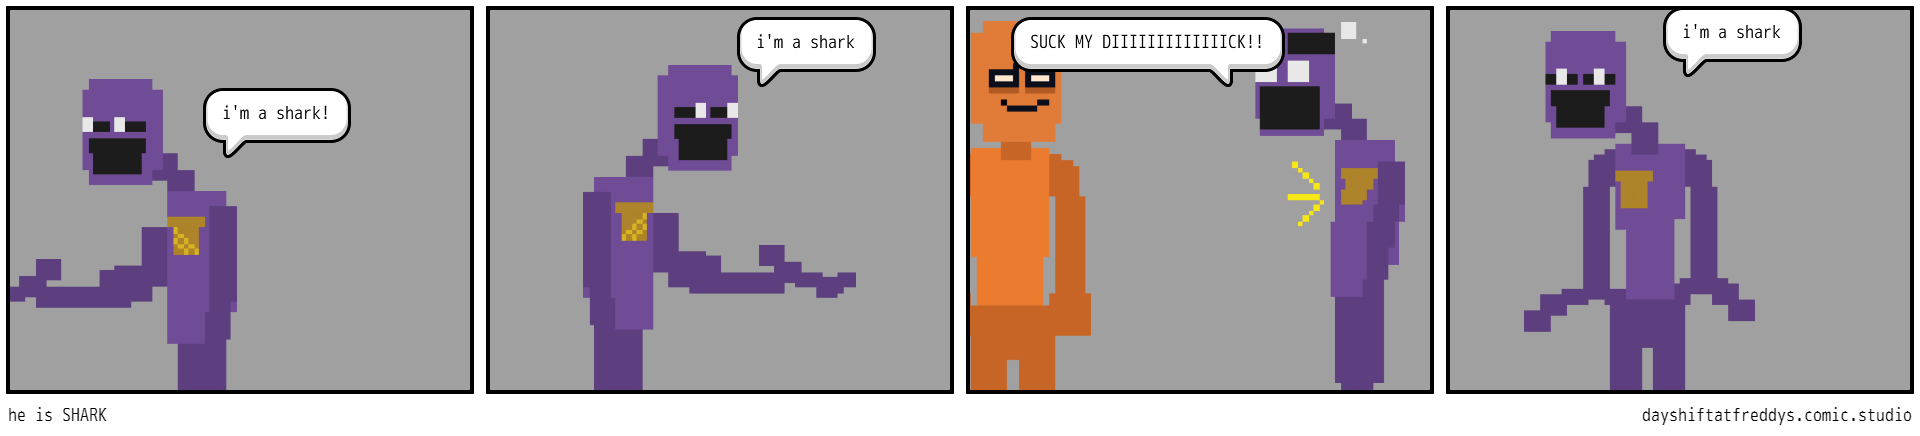 he is SHARK